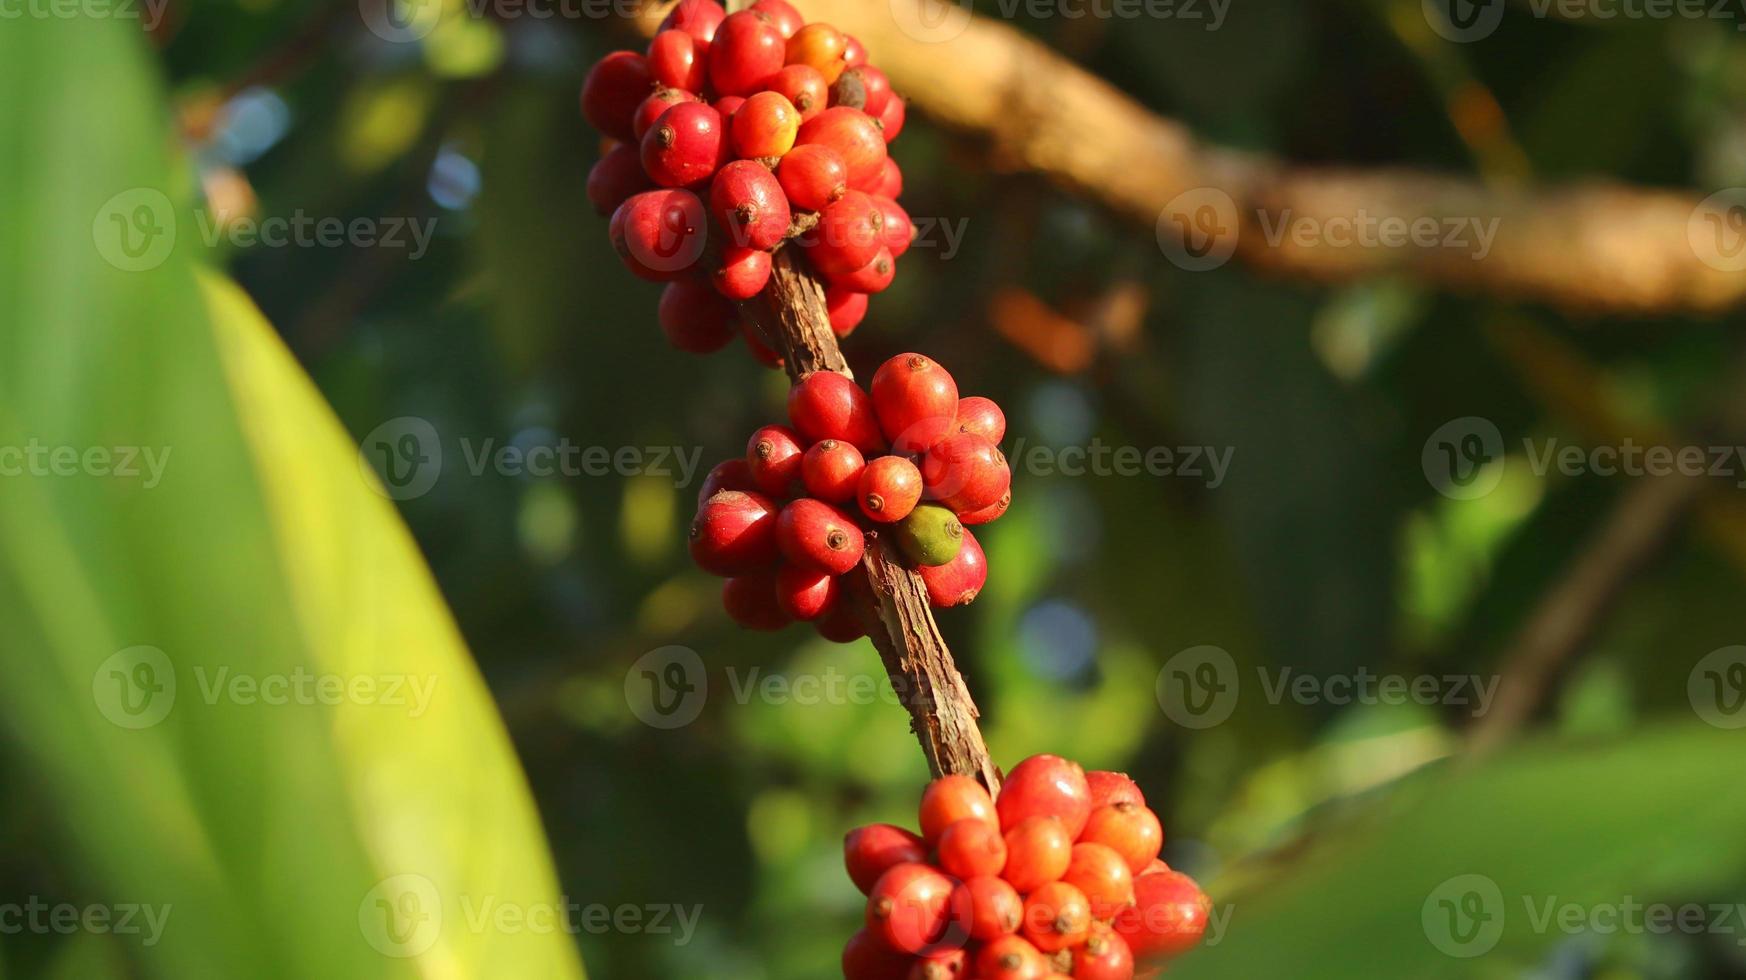 ciliegie di caffè rosse sui rami e mature così sono pronte per essere raccolte. frutta del caffè dall'isola di java indonesia. foto